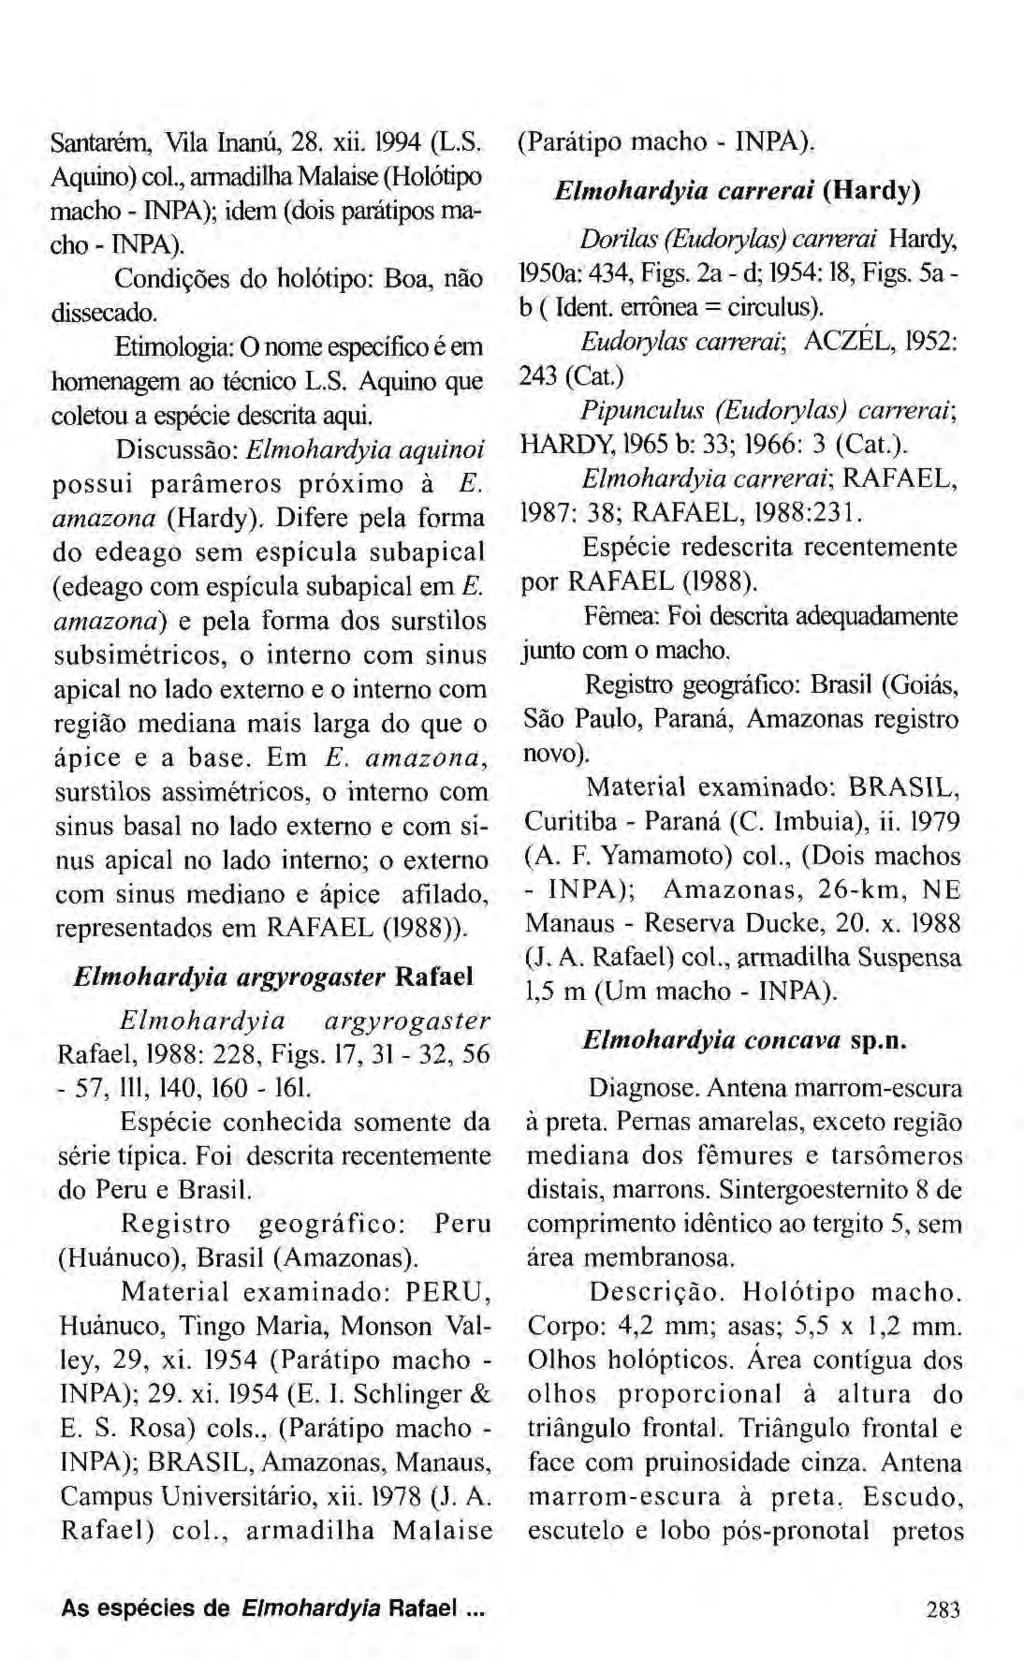 Santarém, Vila Inanú, 28. xii. 1994 (L.S. Aquino) col., armadilha Malaise (Holótipo macho - INPA); idem (dois paratipos macho - INPA). Condições do holótipo: Boa, não dissecado.